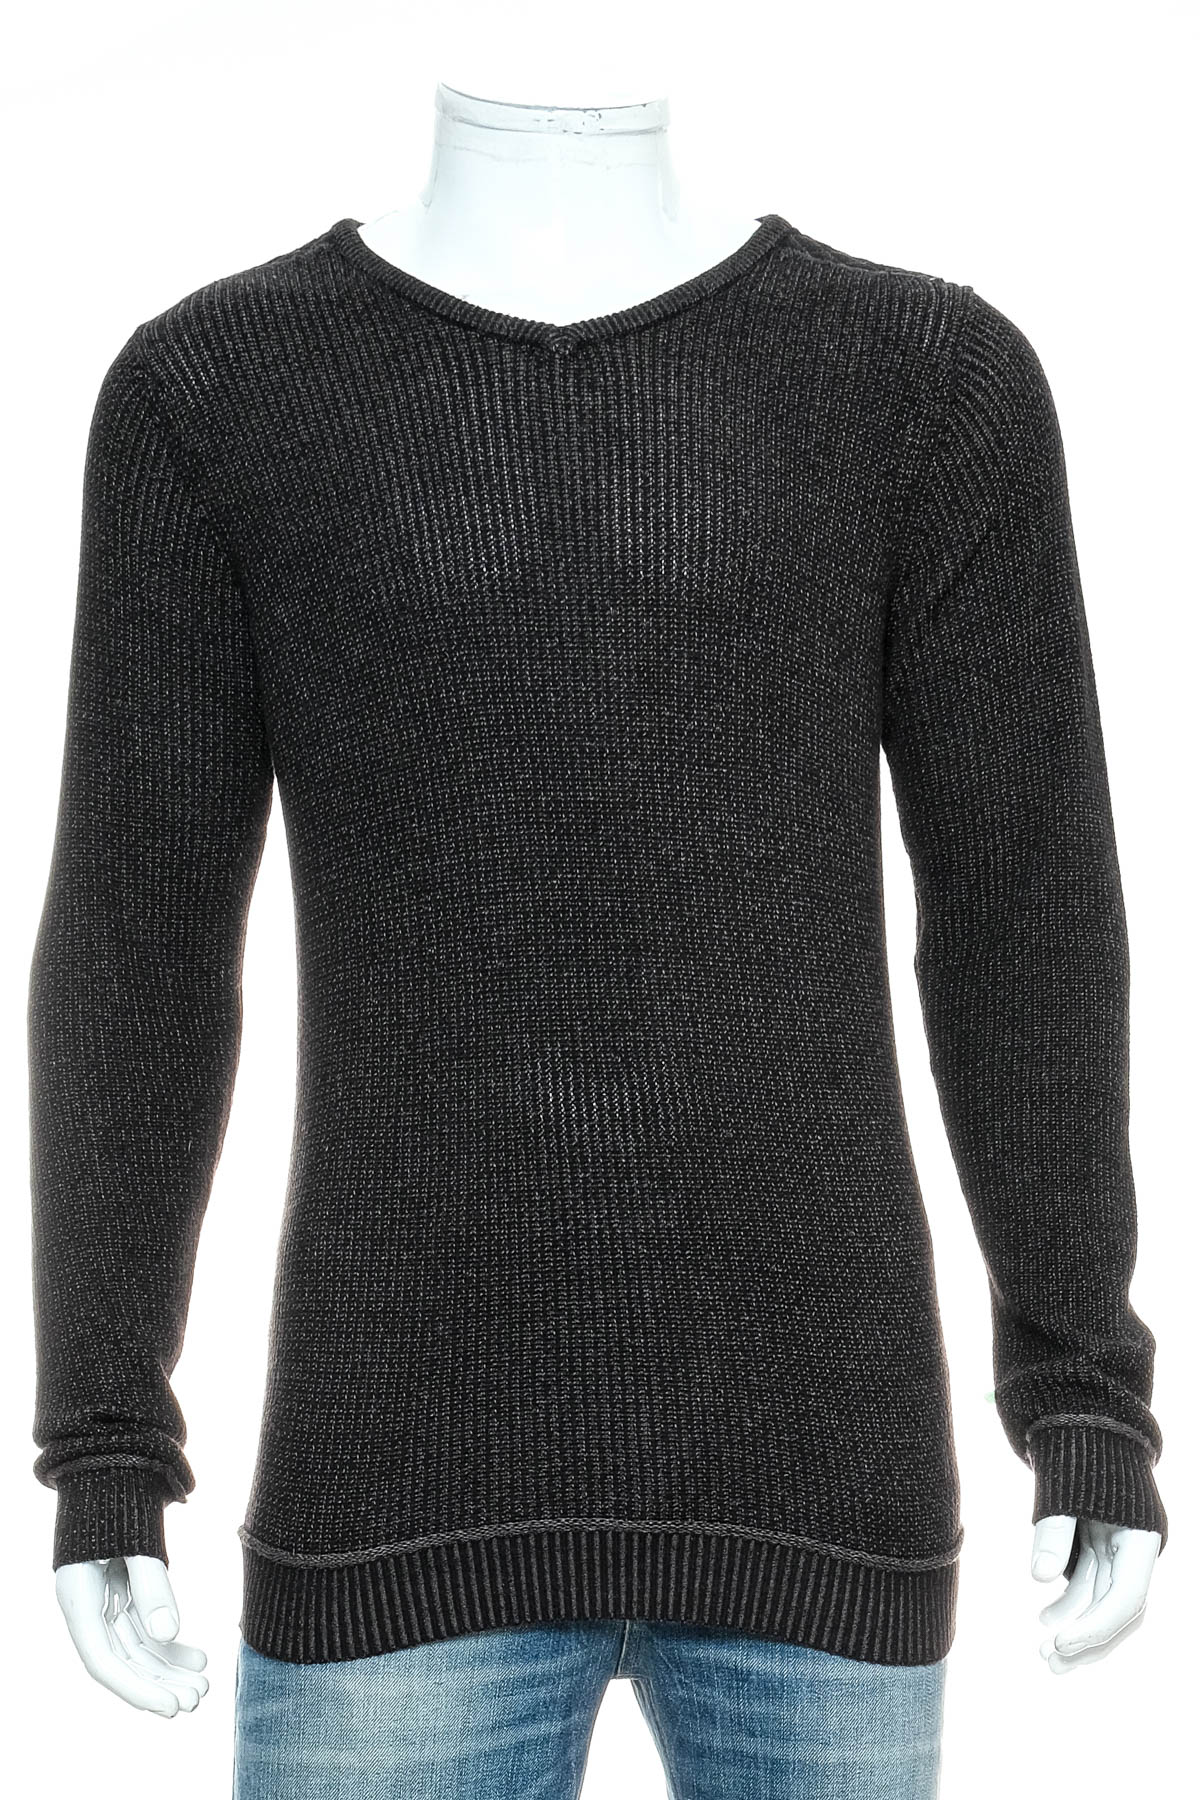 Men's sweater - INSITUX - 0